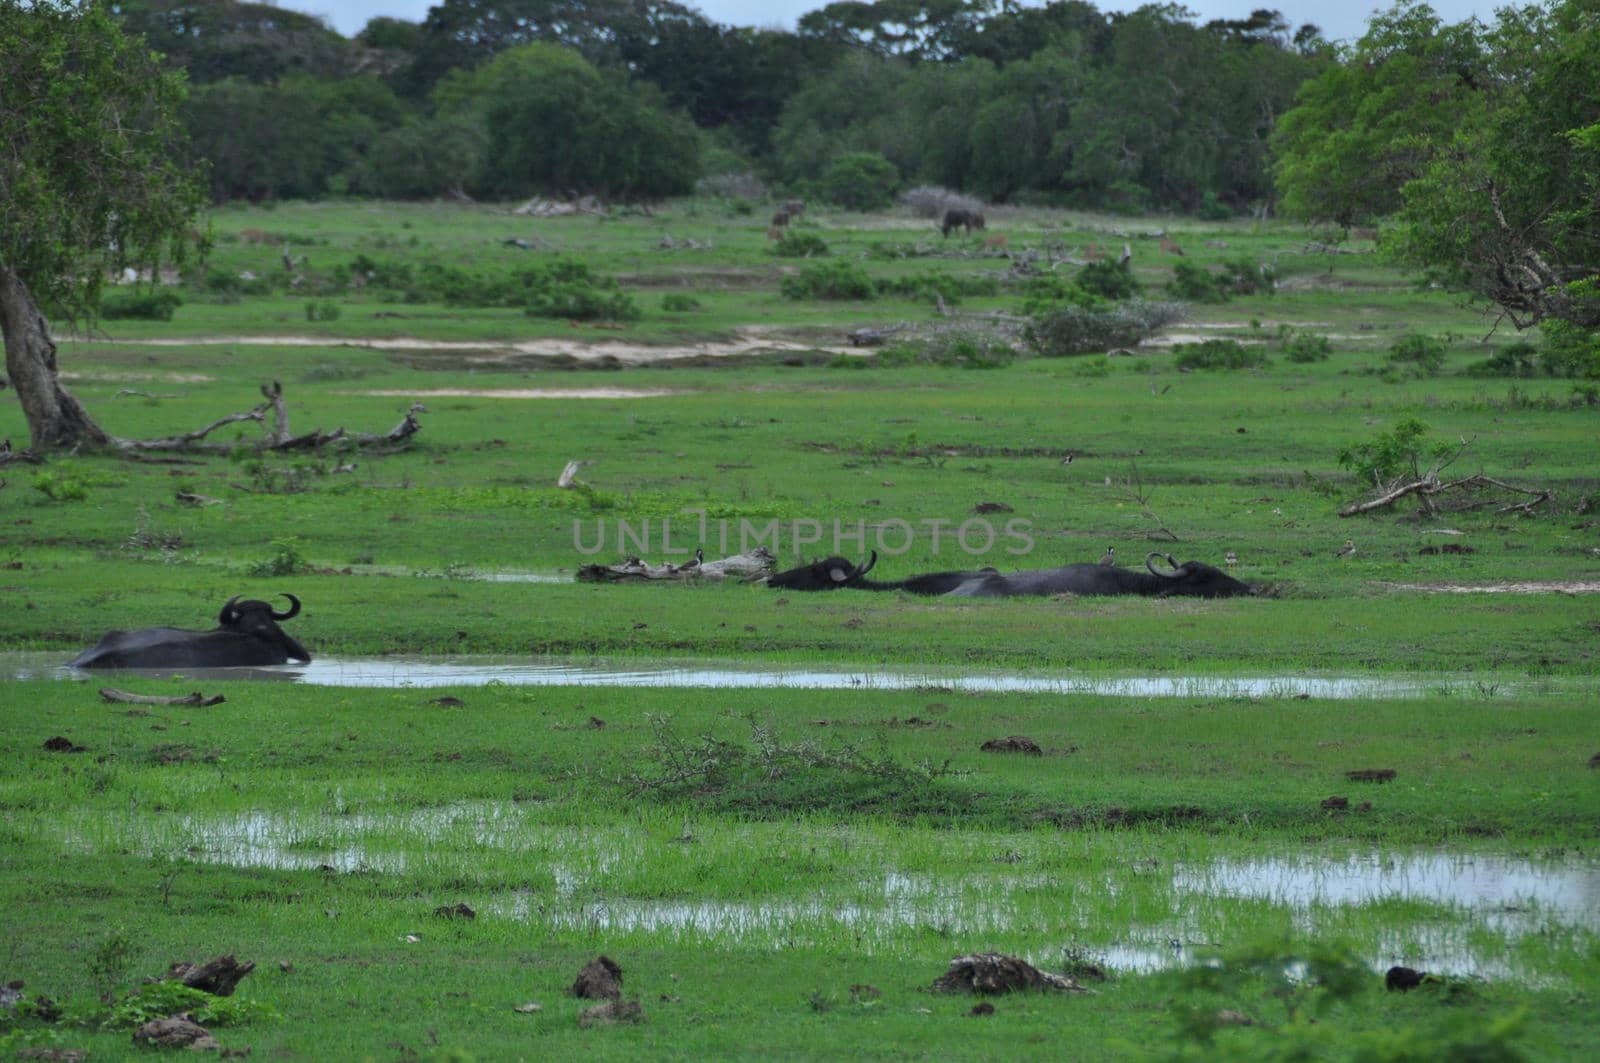 Water buffaloes in Yala National Park, Sri Lanka.